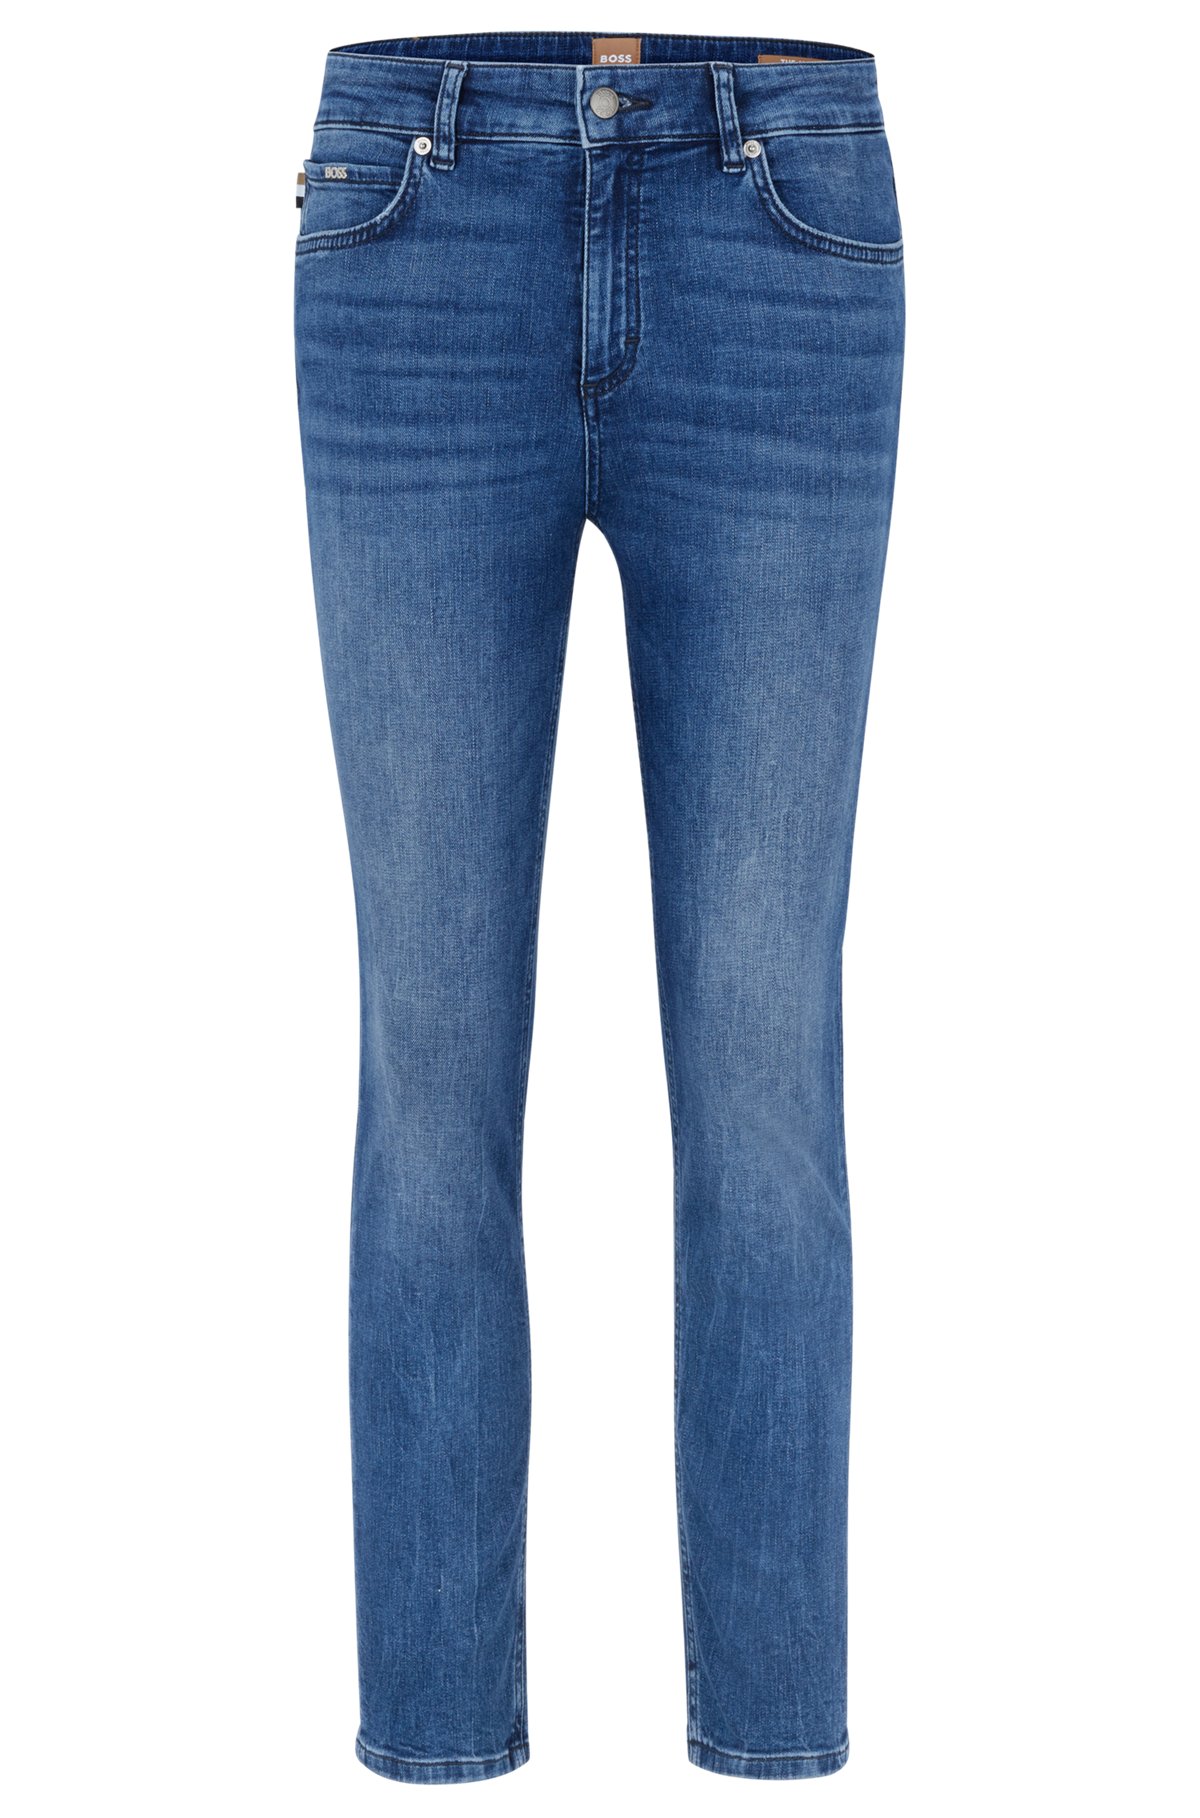 Meerblaue Cropped-Jeans aus Stretch-Denim mit mittlerer Bundhöhe, Hellblau